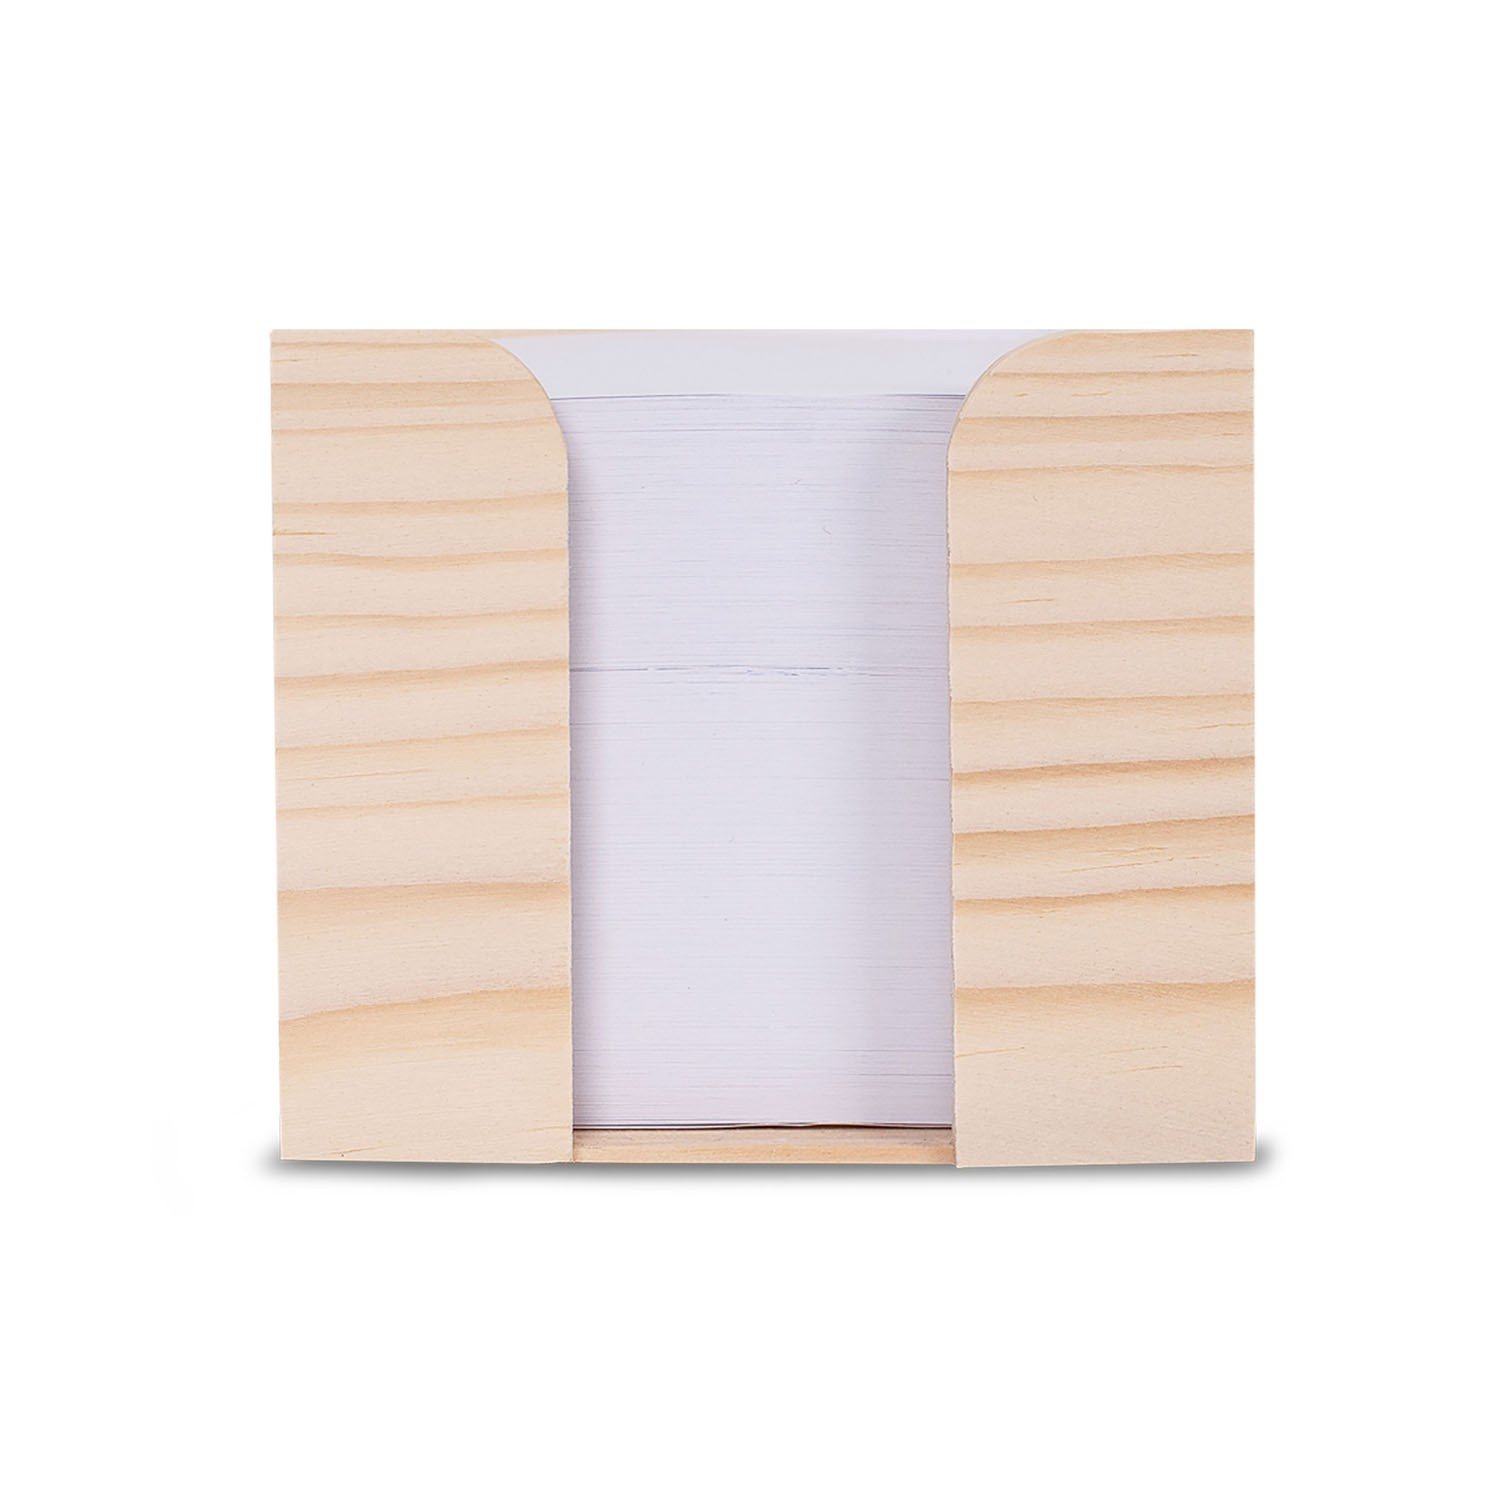 Goodies Boite Cube Papier Bois, avec Papier Recyclé 10 x 10 x 8,5 cm